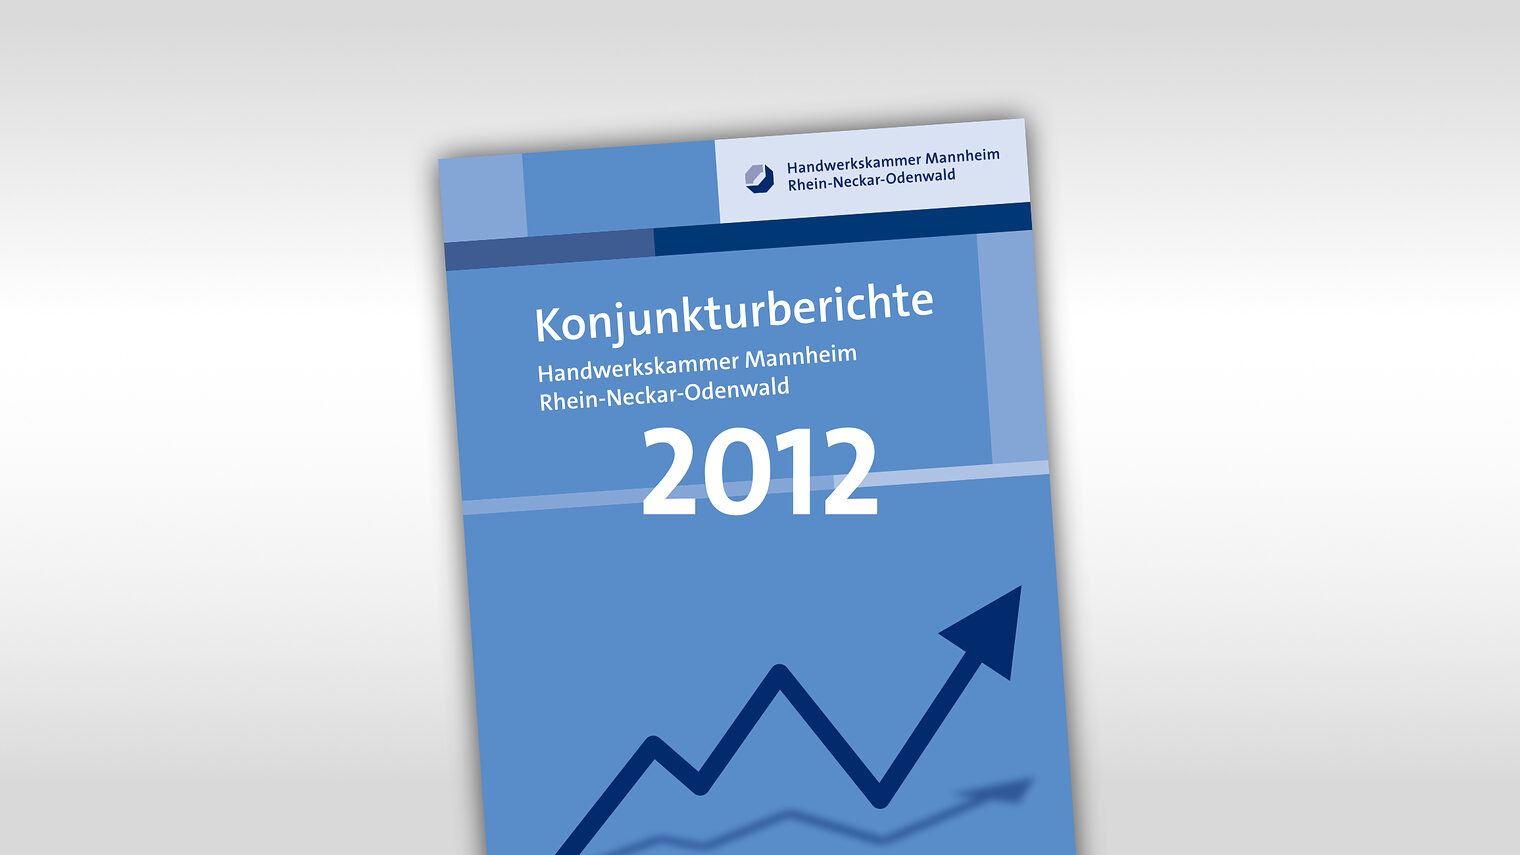 Titelmotiv Konjunkturbericht plus Jahreszahl 2012